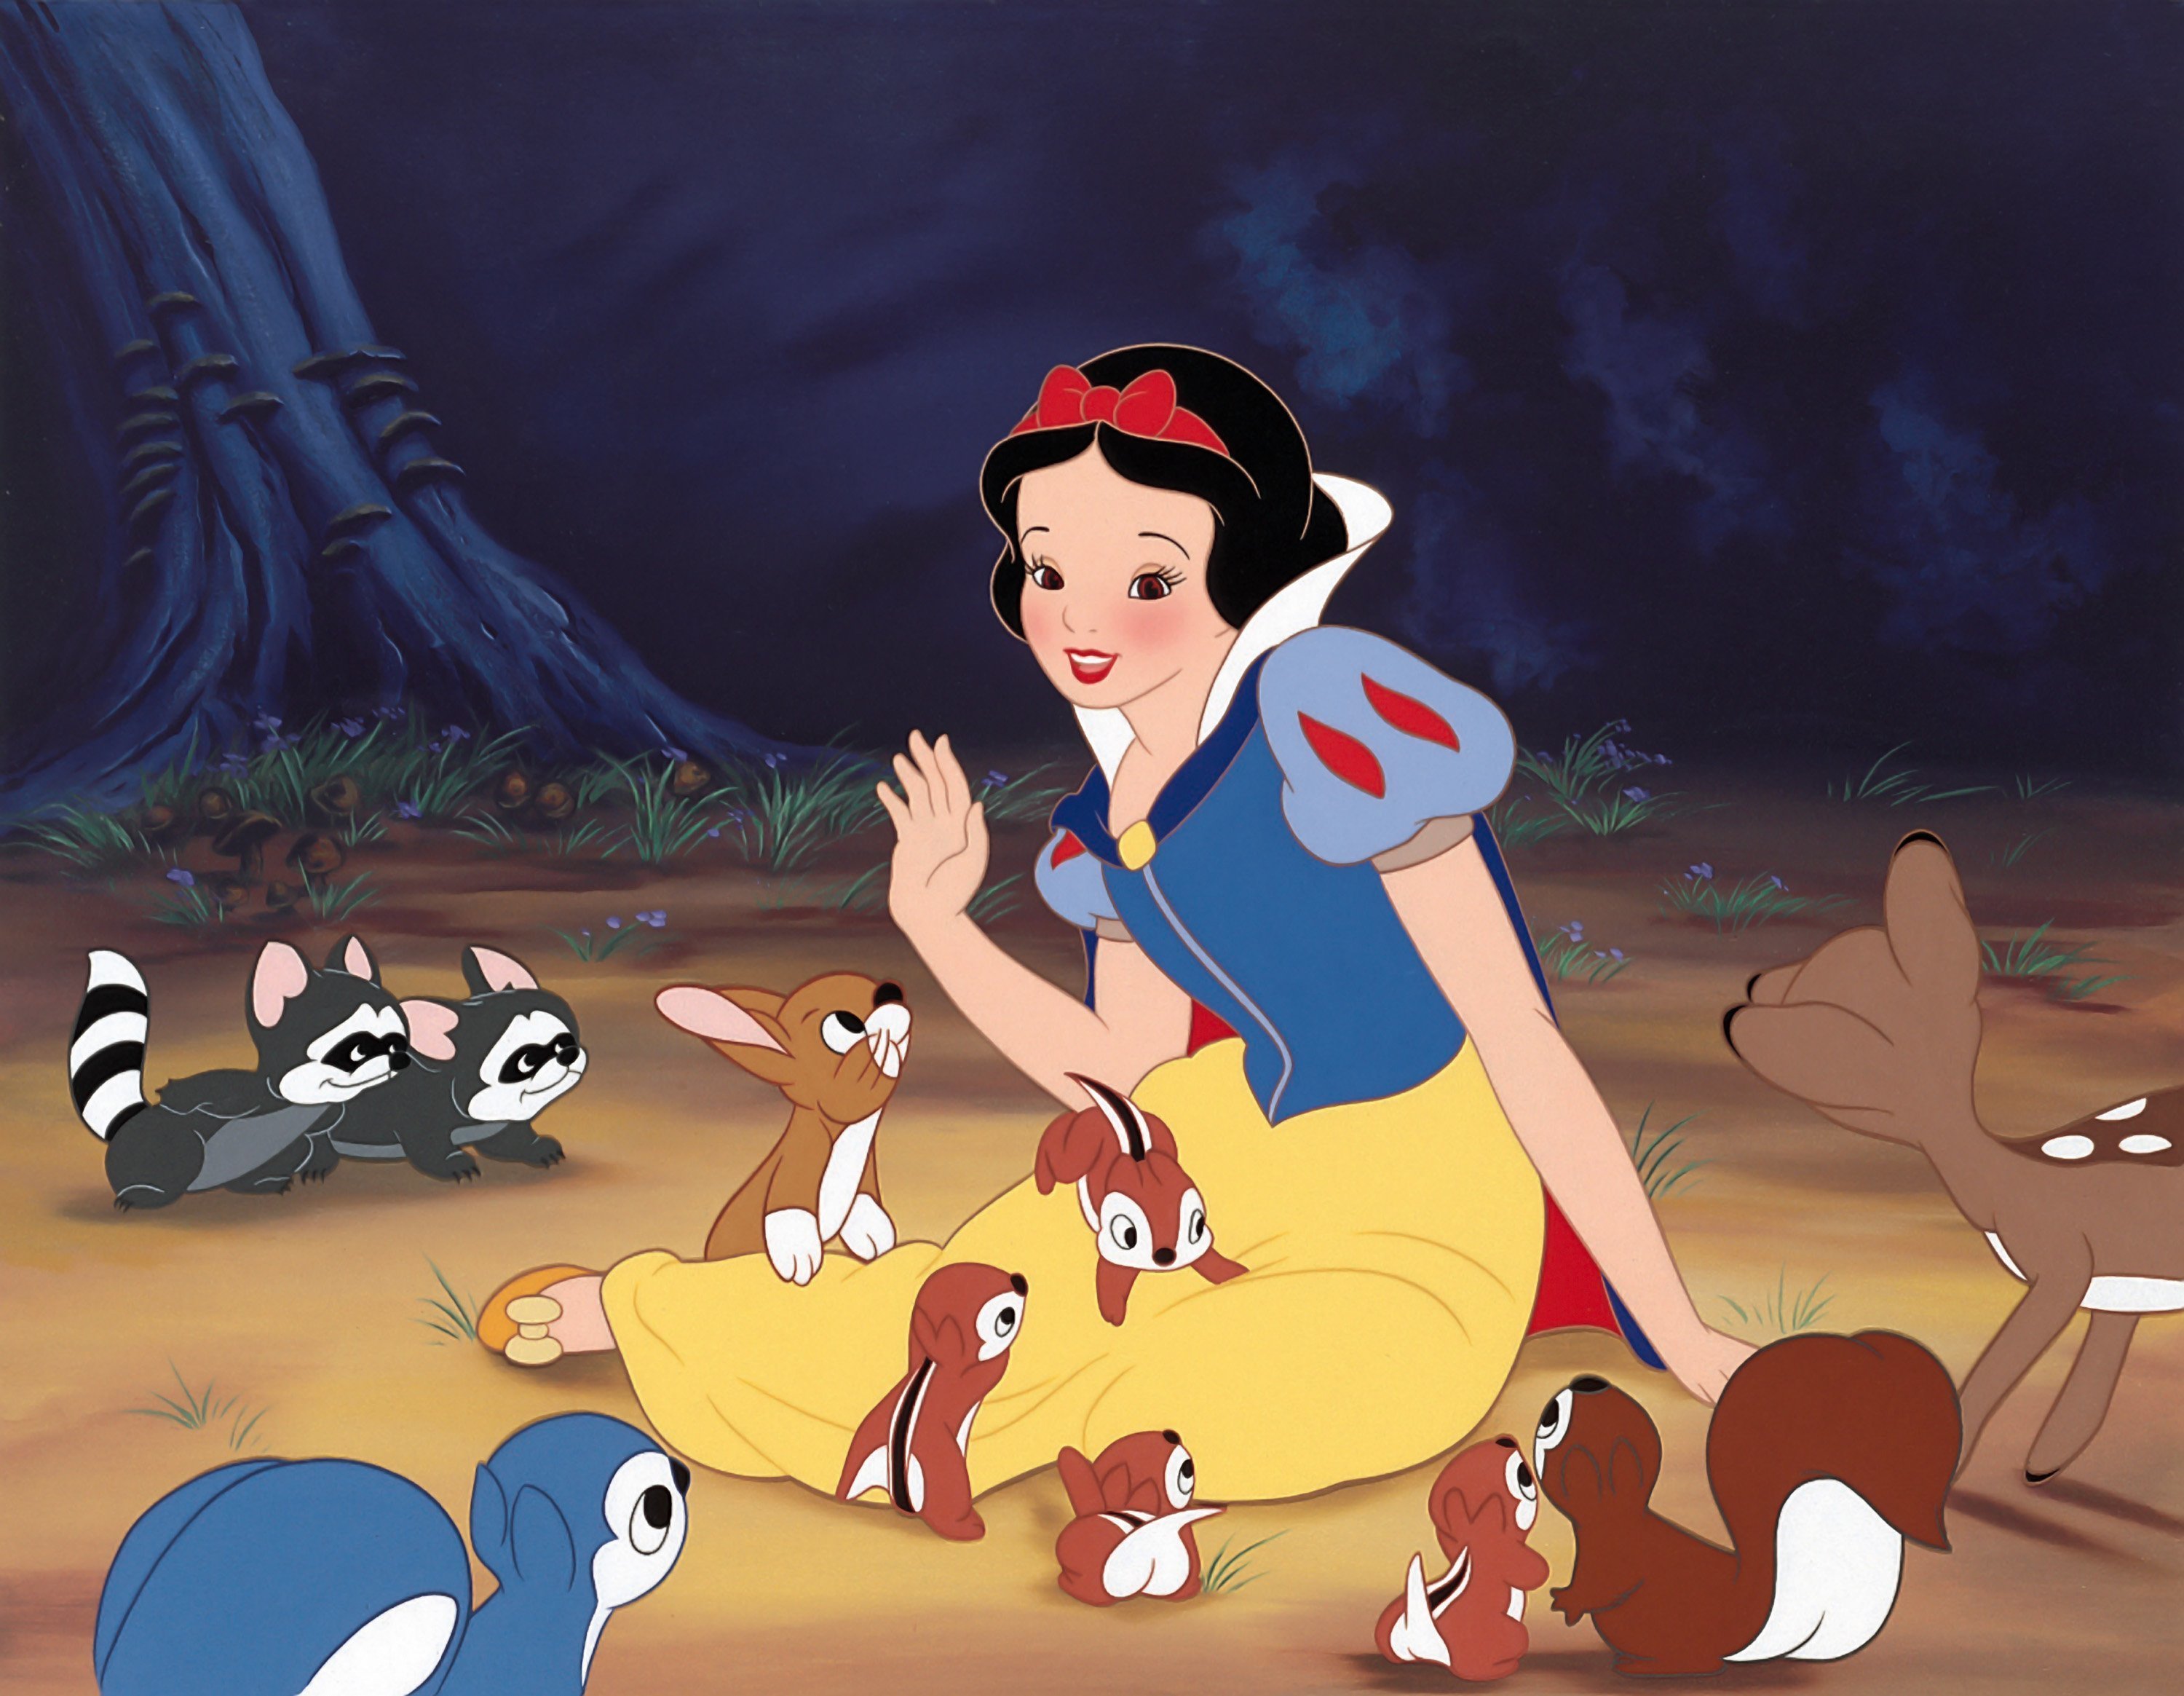 La increíble historia detrás de Blanca Nieves, la primera película animada  de Disney